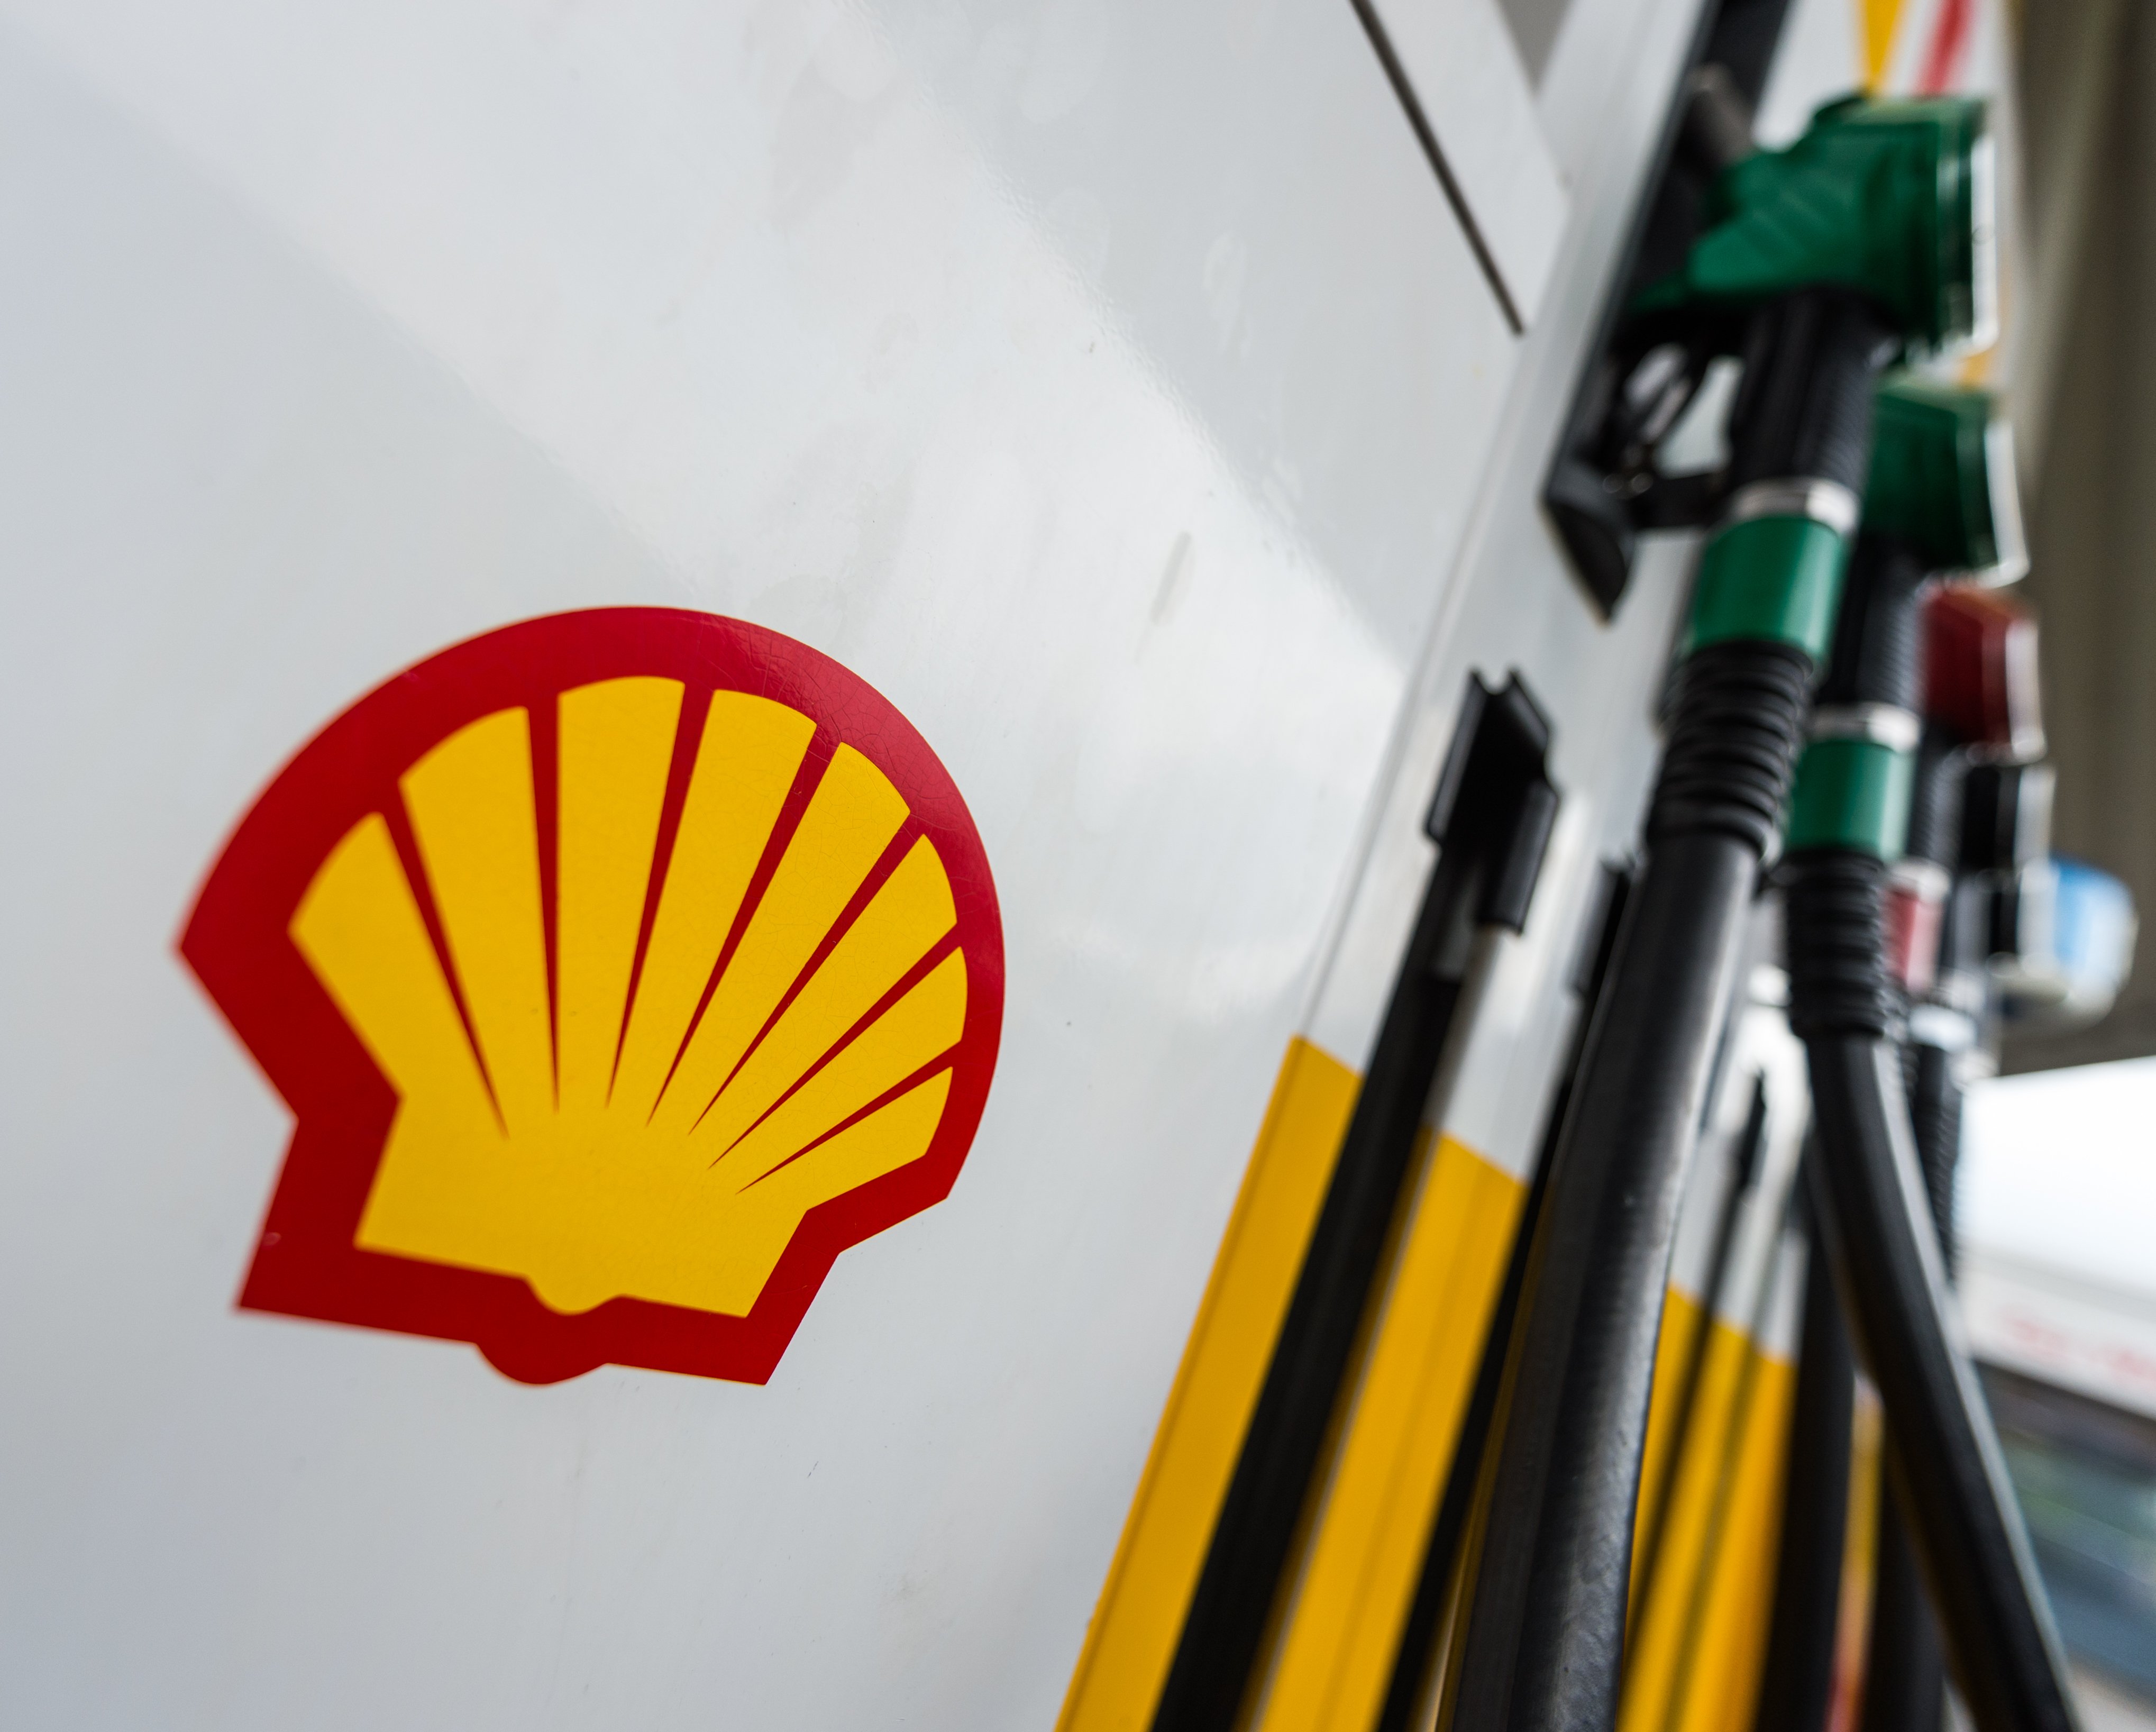 La petrolera Shell obtiene un beneficio de 40.300 millones, el mejor de su historia